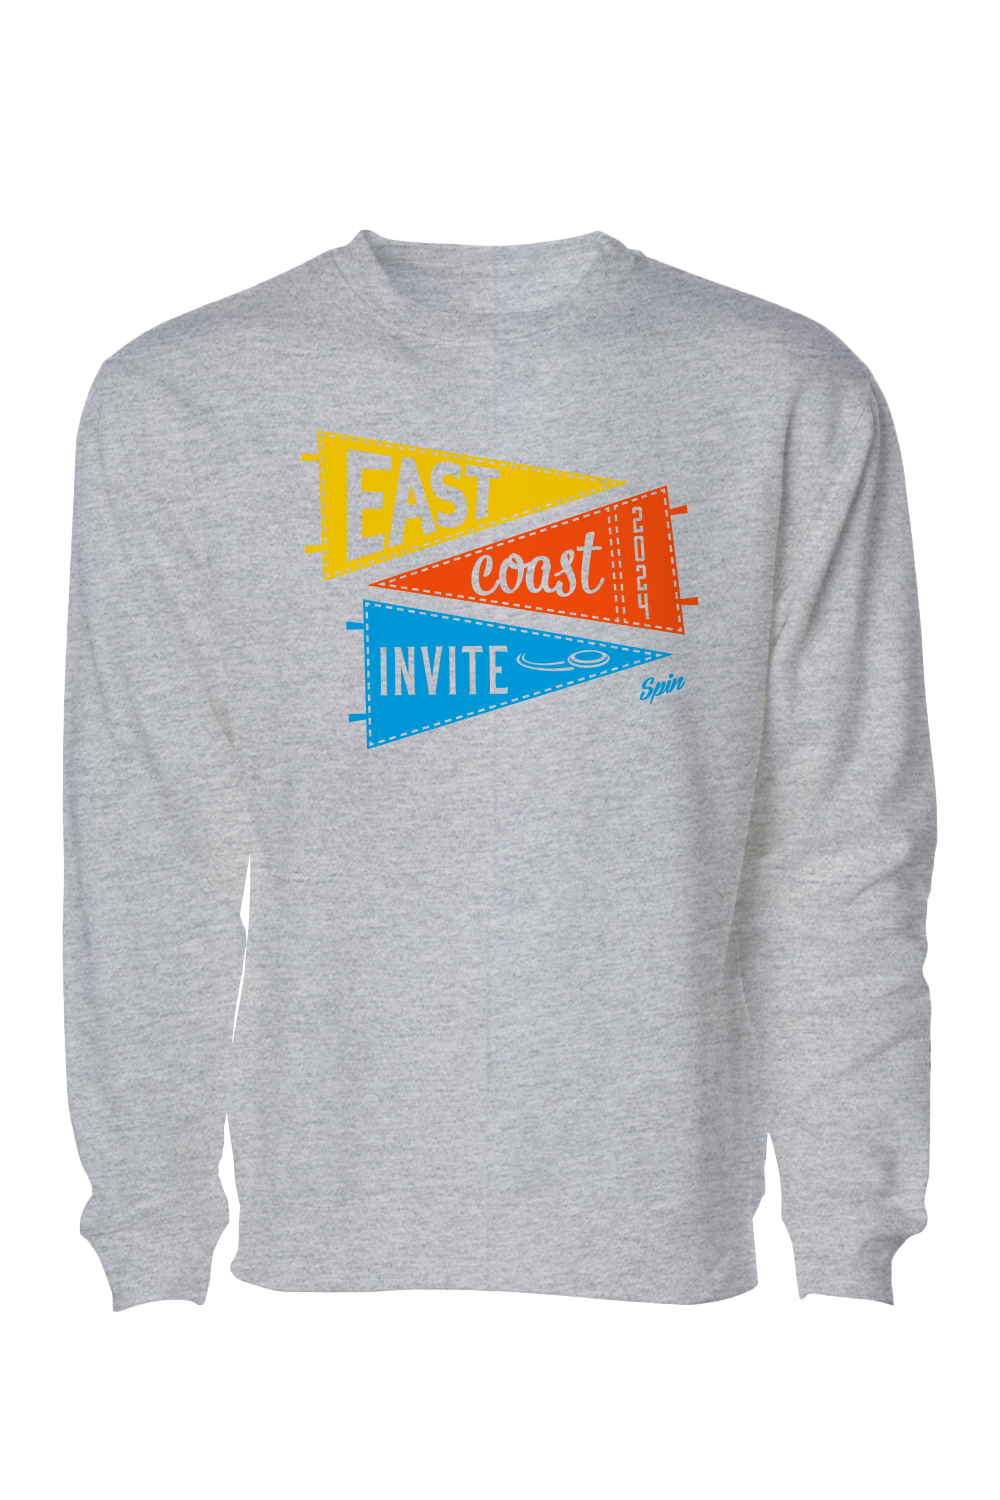 East Coast Invite 2024 Crewneck Sweatshirt